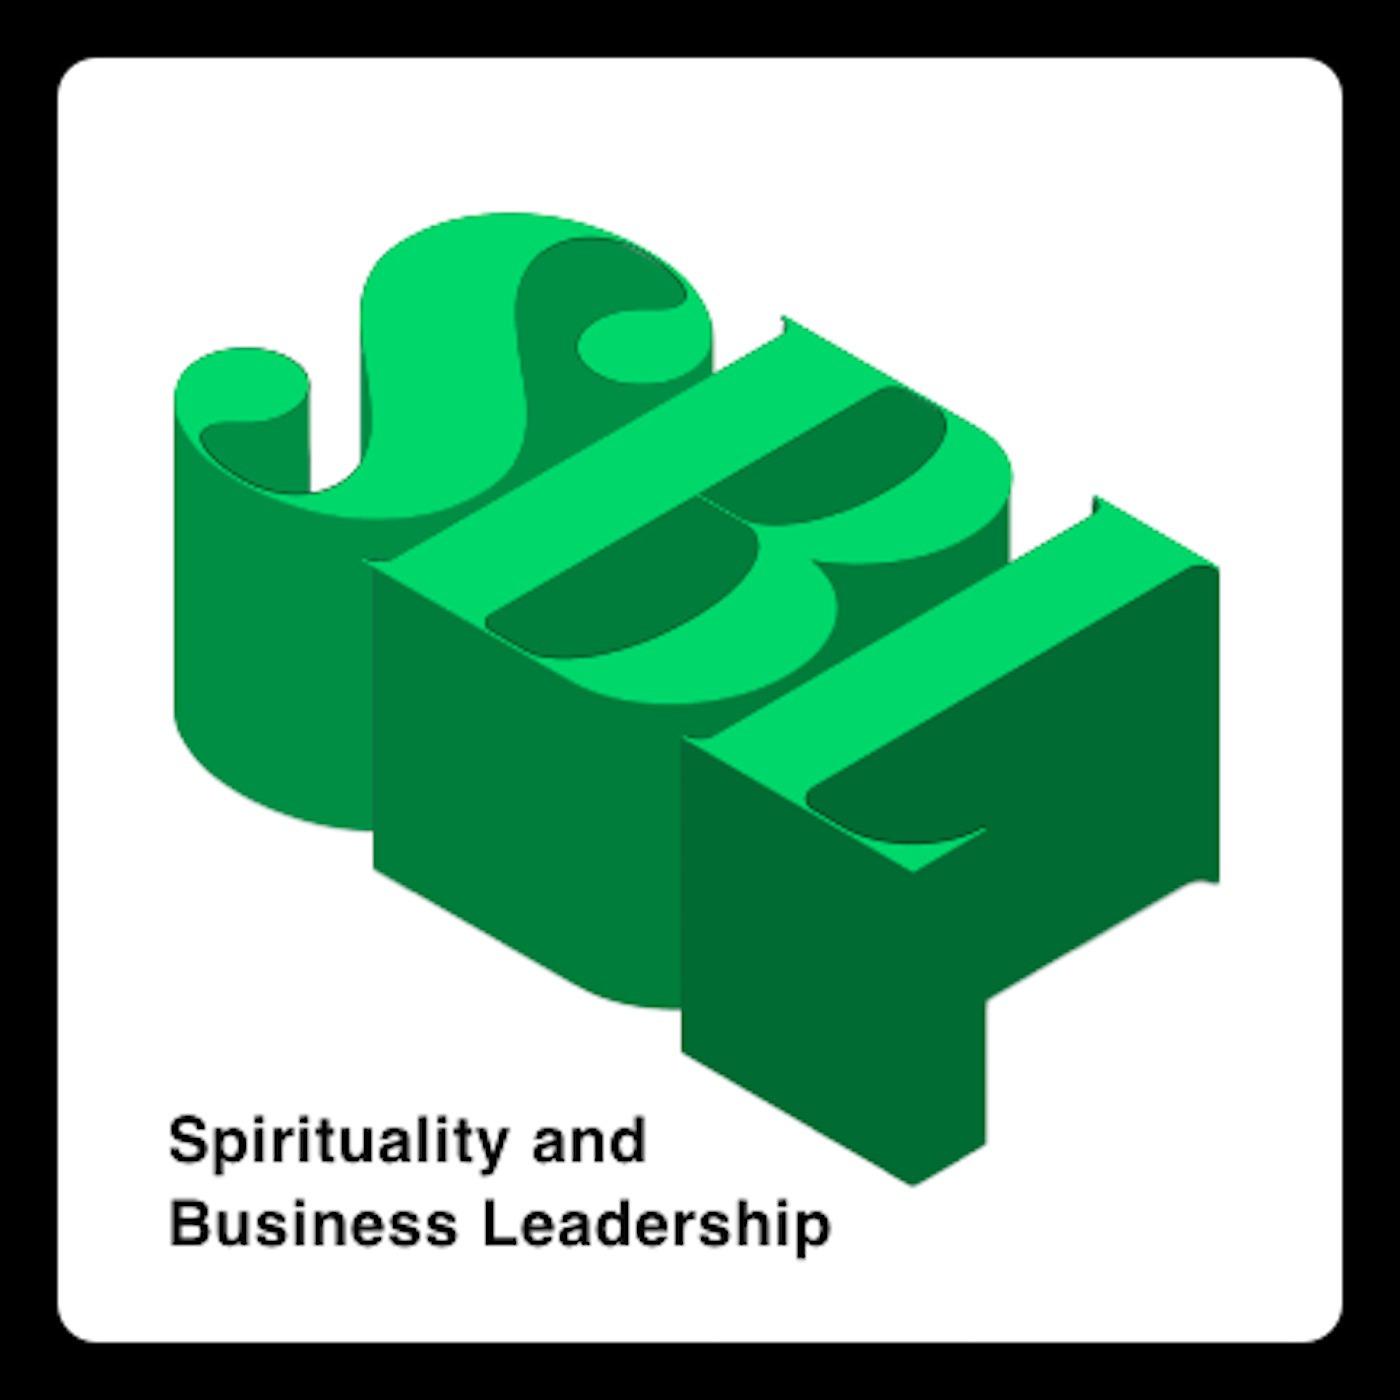 Spirituality and Business Leadership